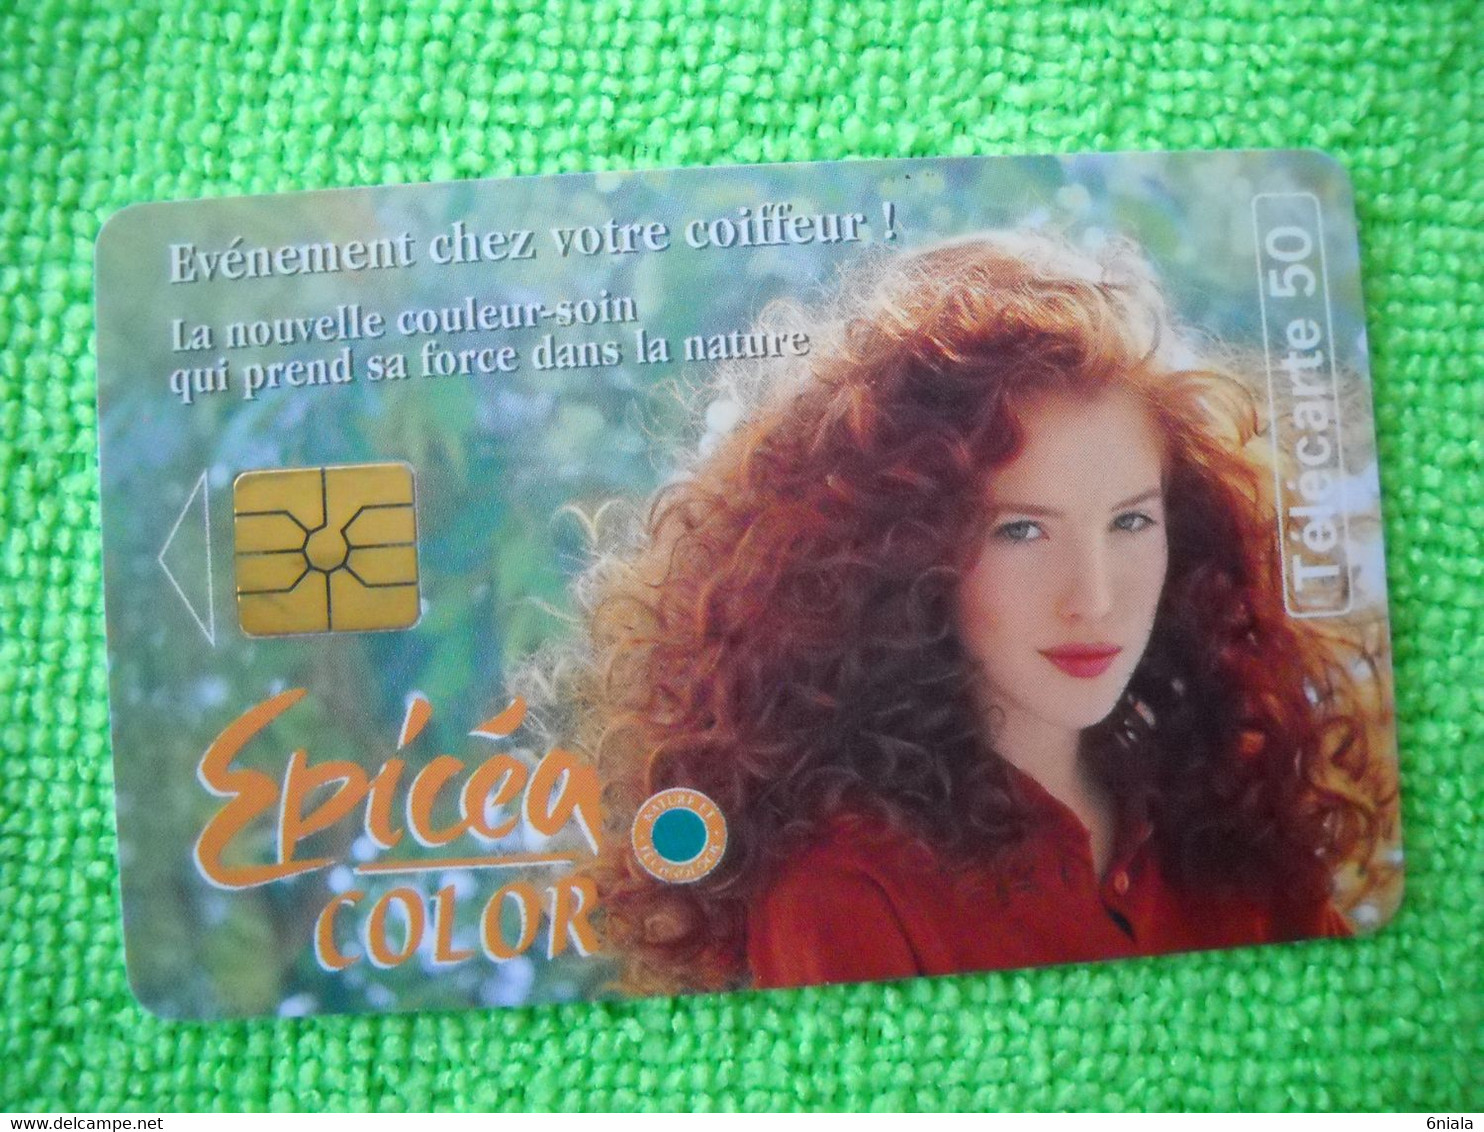 7110 Télécarte Collection EPICEA COLOR  Coloration Cheveux Shampoing     50u  ( Recto Verso)  Carte Téléphonique - Publicidad